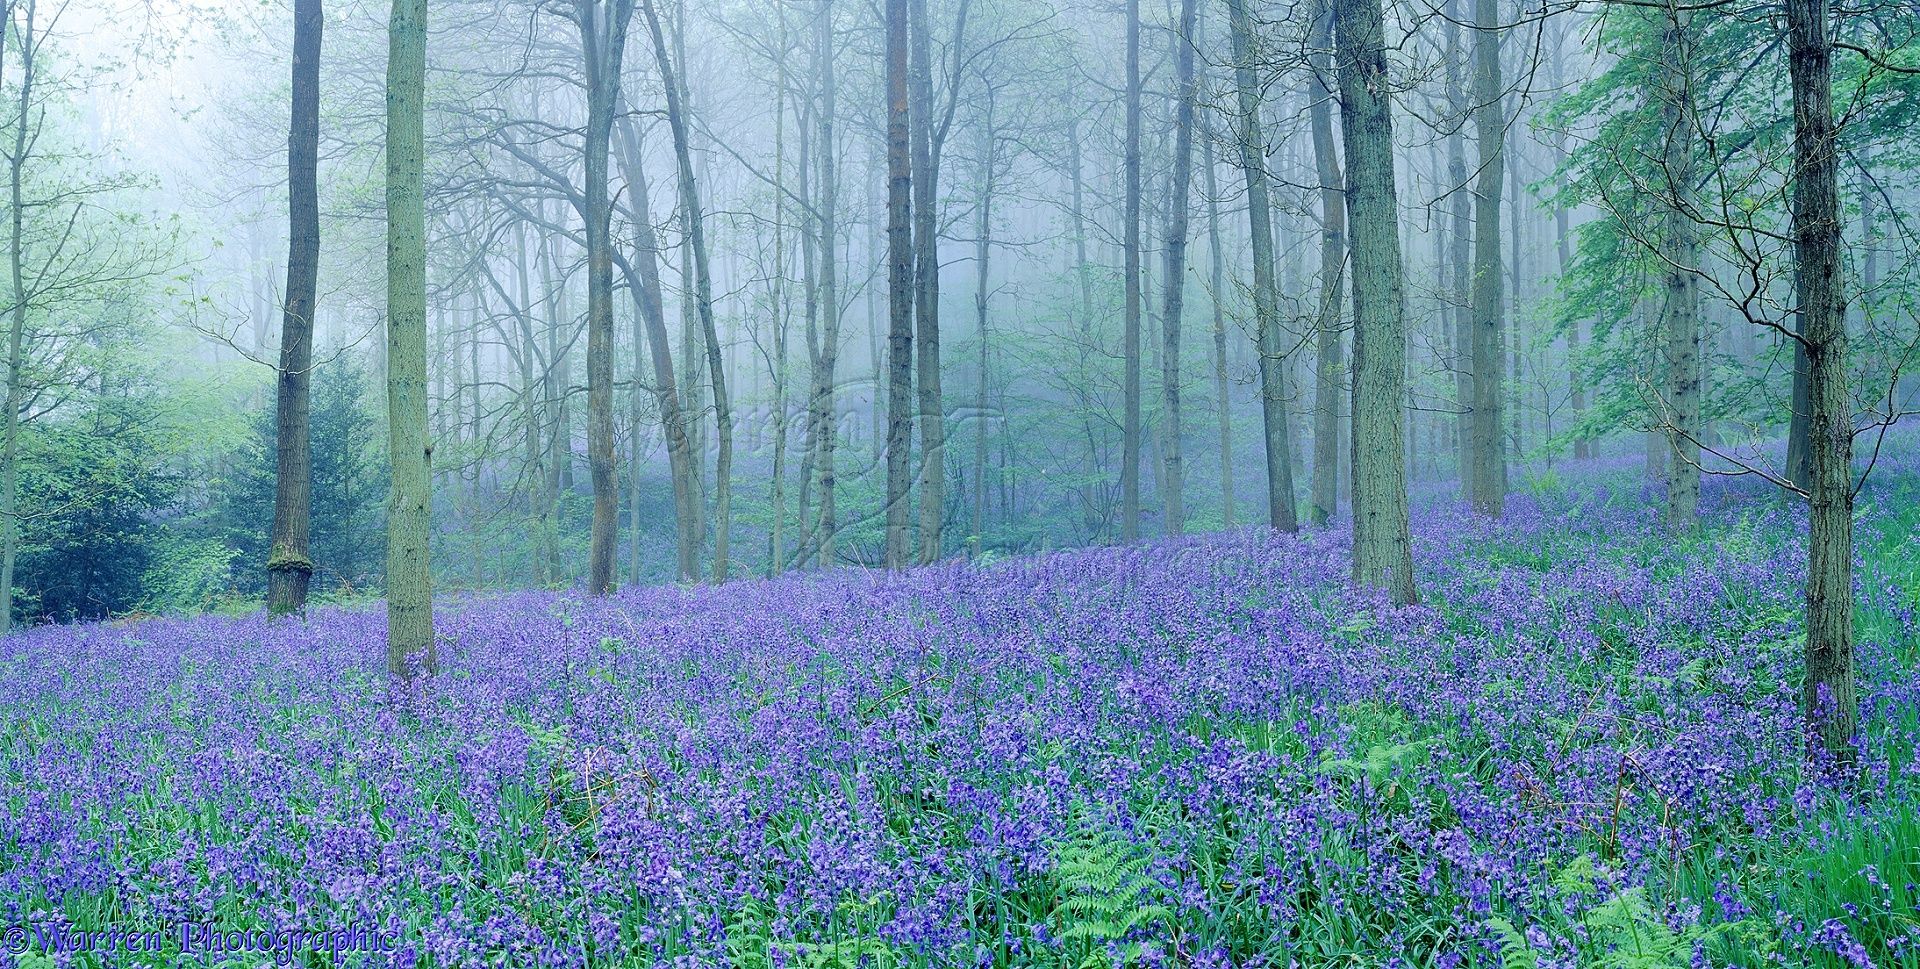 Misty Bluebell woods photo WP01203